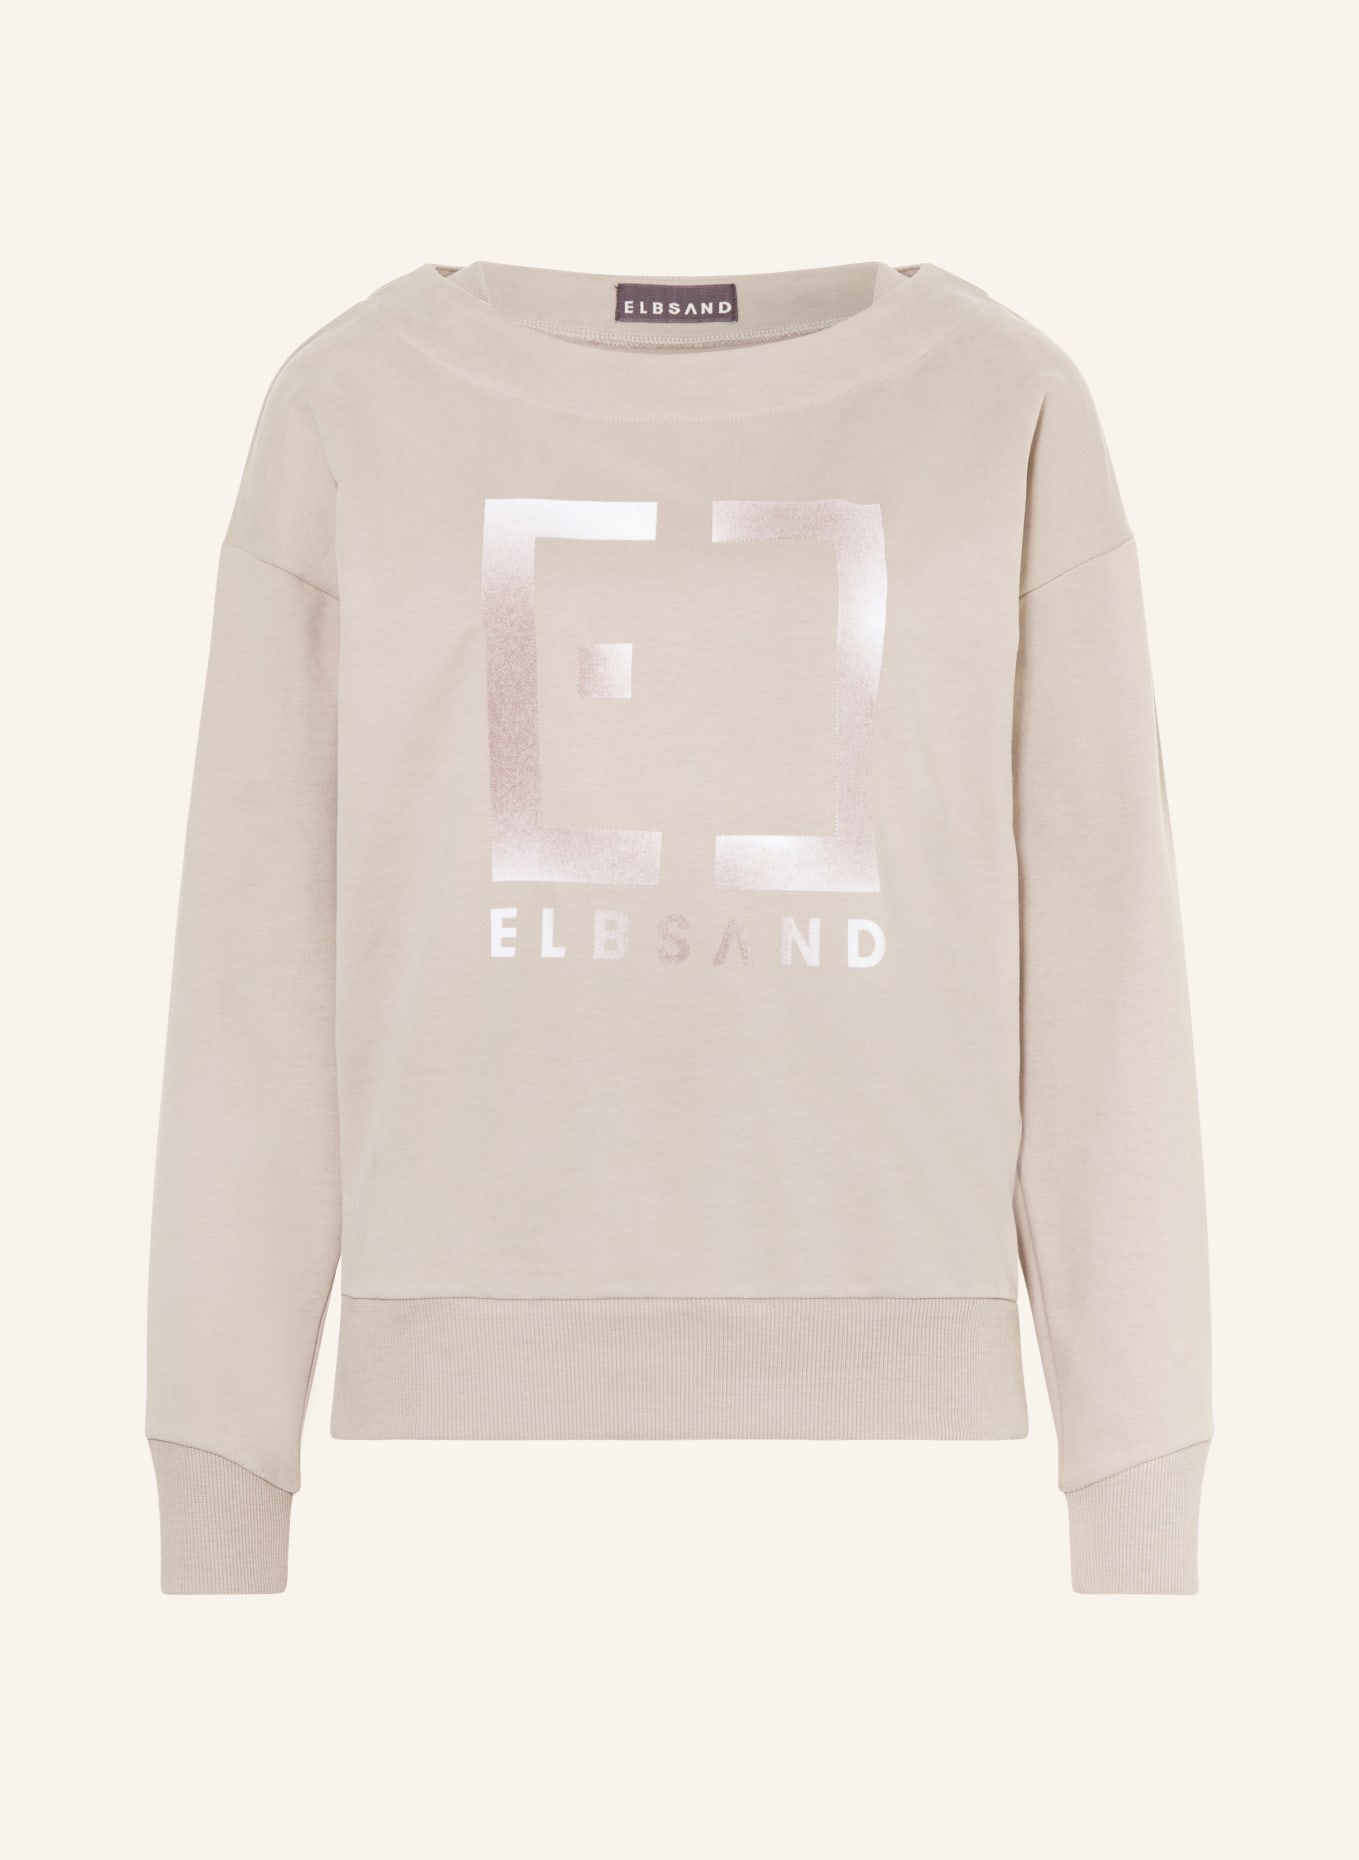 ELBSAND Sweatshirt FIONNA, Farbe: BEIGE (Bild 1)